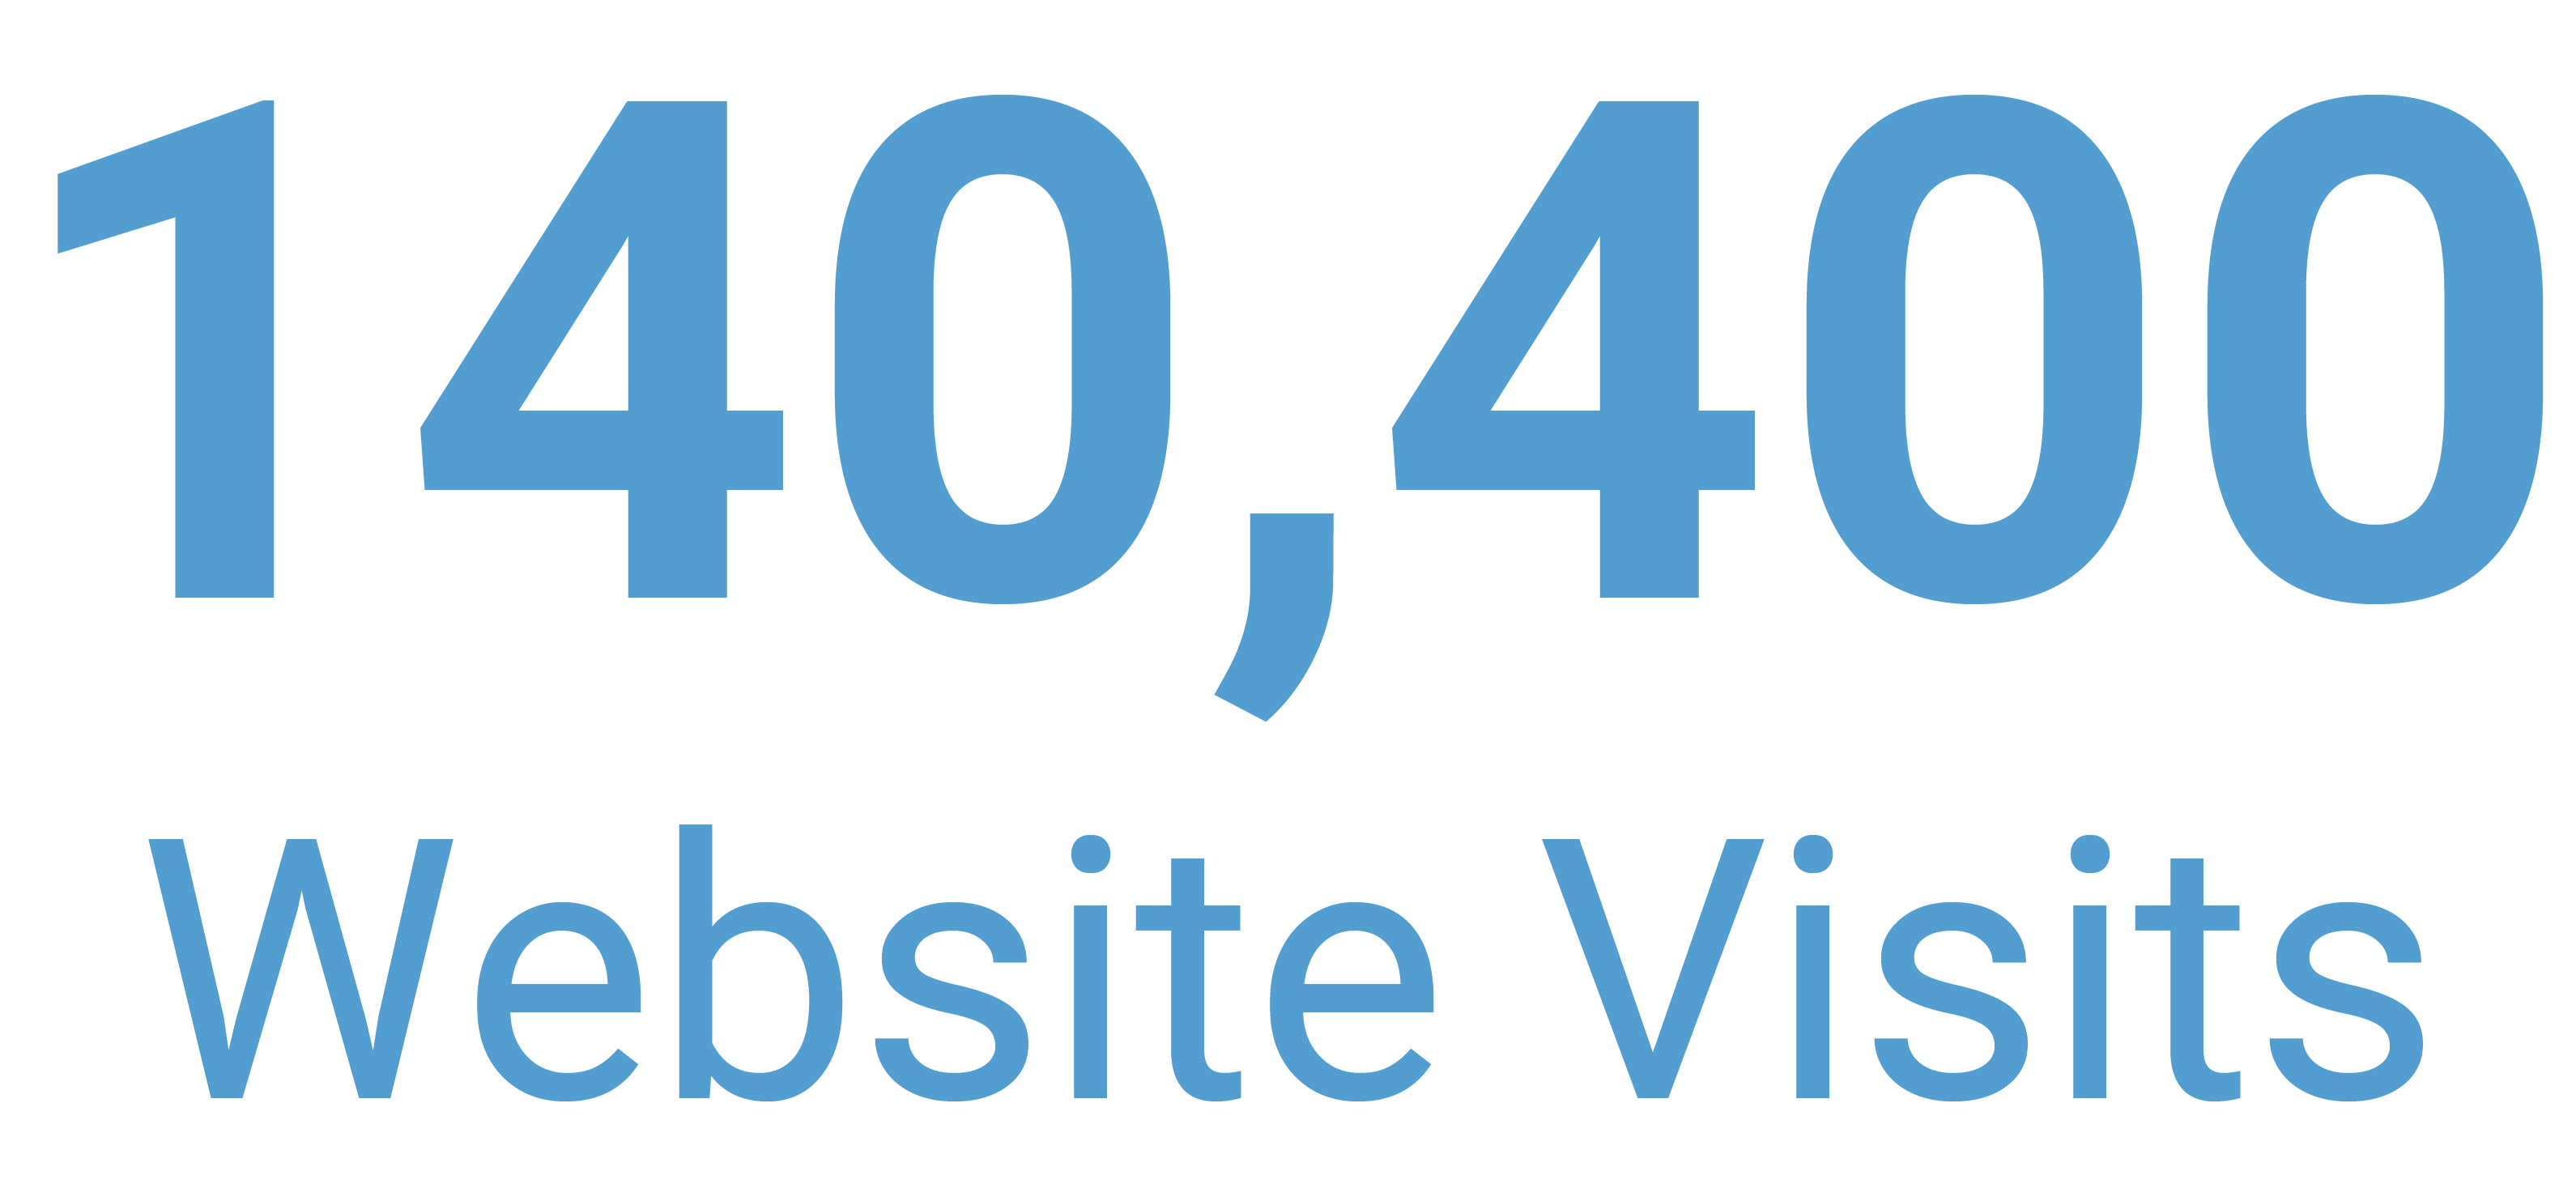 140400 website visits